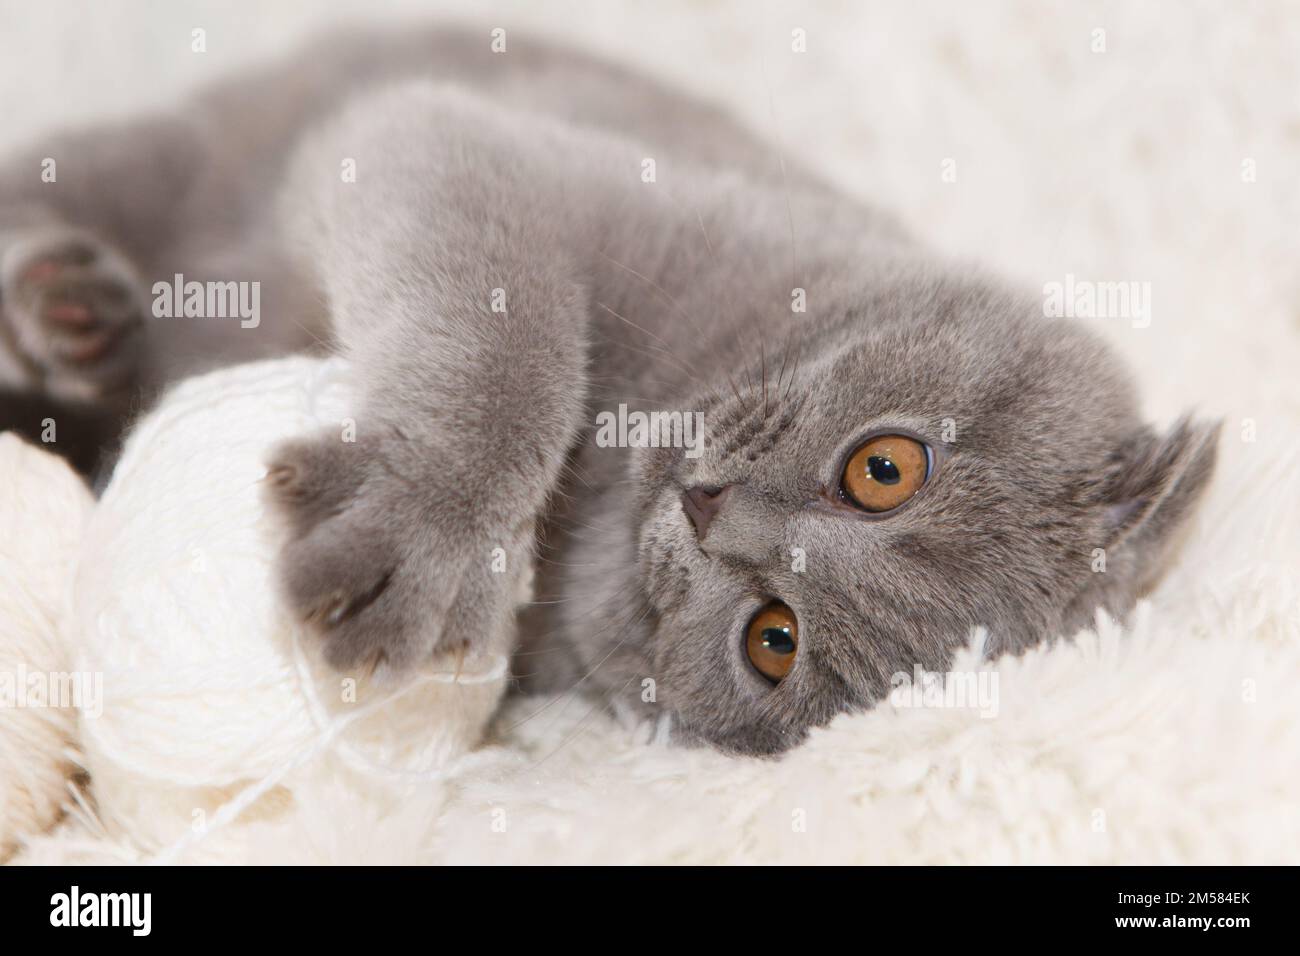 Un gatto grigio gioca con una palla bianca di lana su un soffice tappeto. Gattino felice ama accarezzare la mano della donna. shorthair britannico. Cat per nastri pubblicitari. Simpaticissimo primo piano per gli animali domestici. Foto di alta qualità Foto Stock